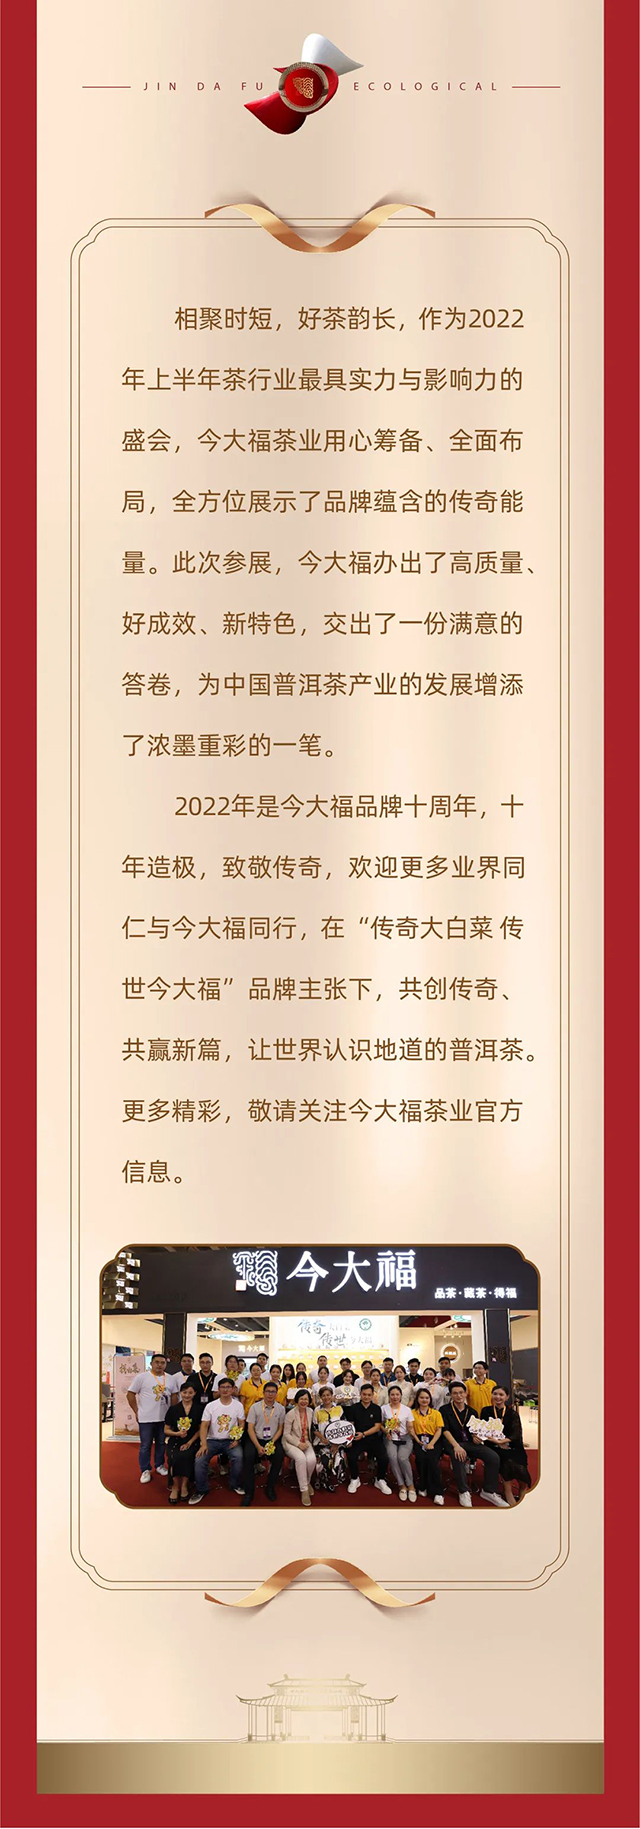 今大福2022广州茶博会圆满收官